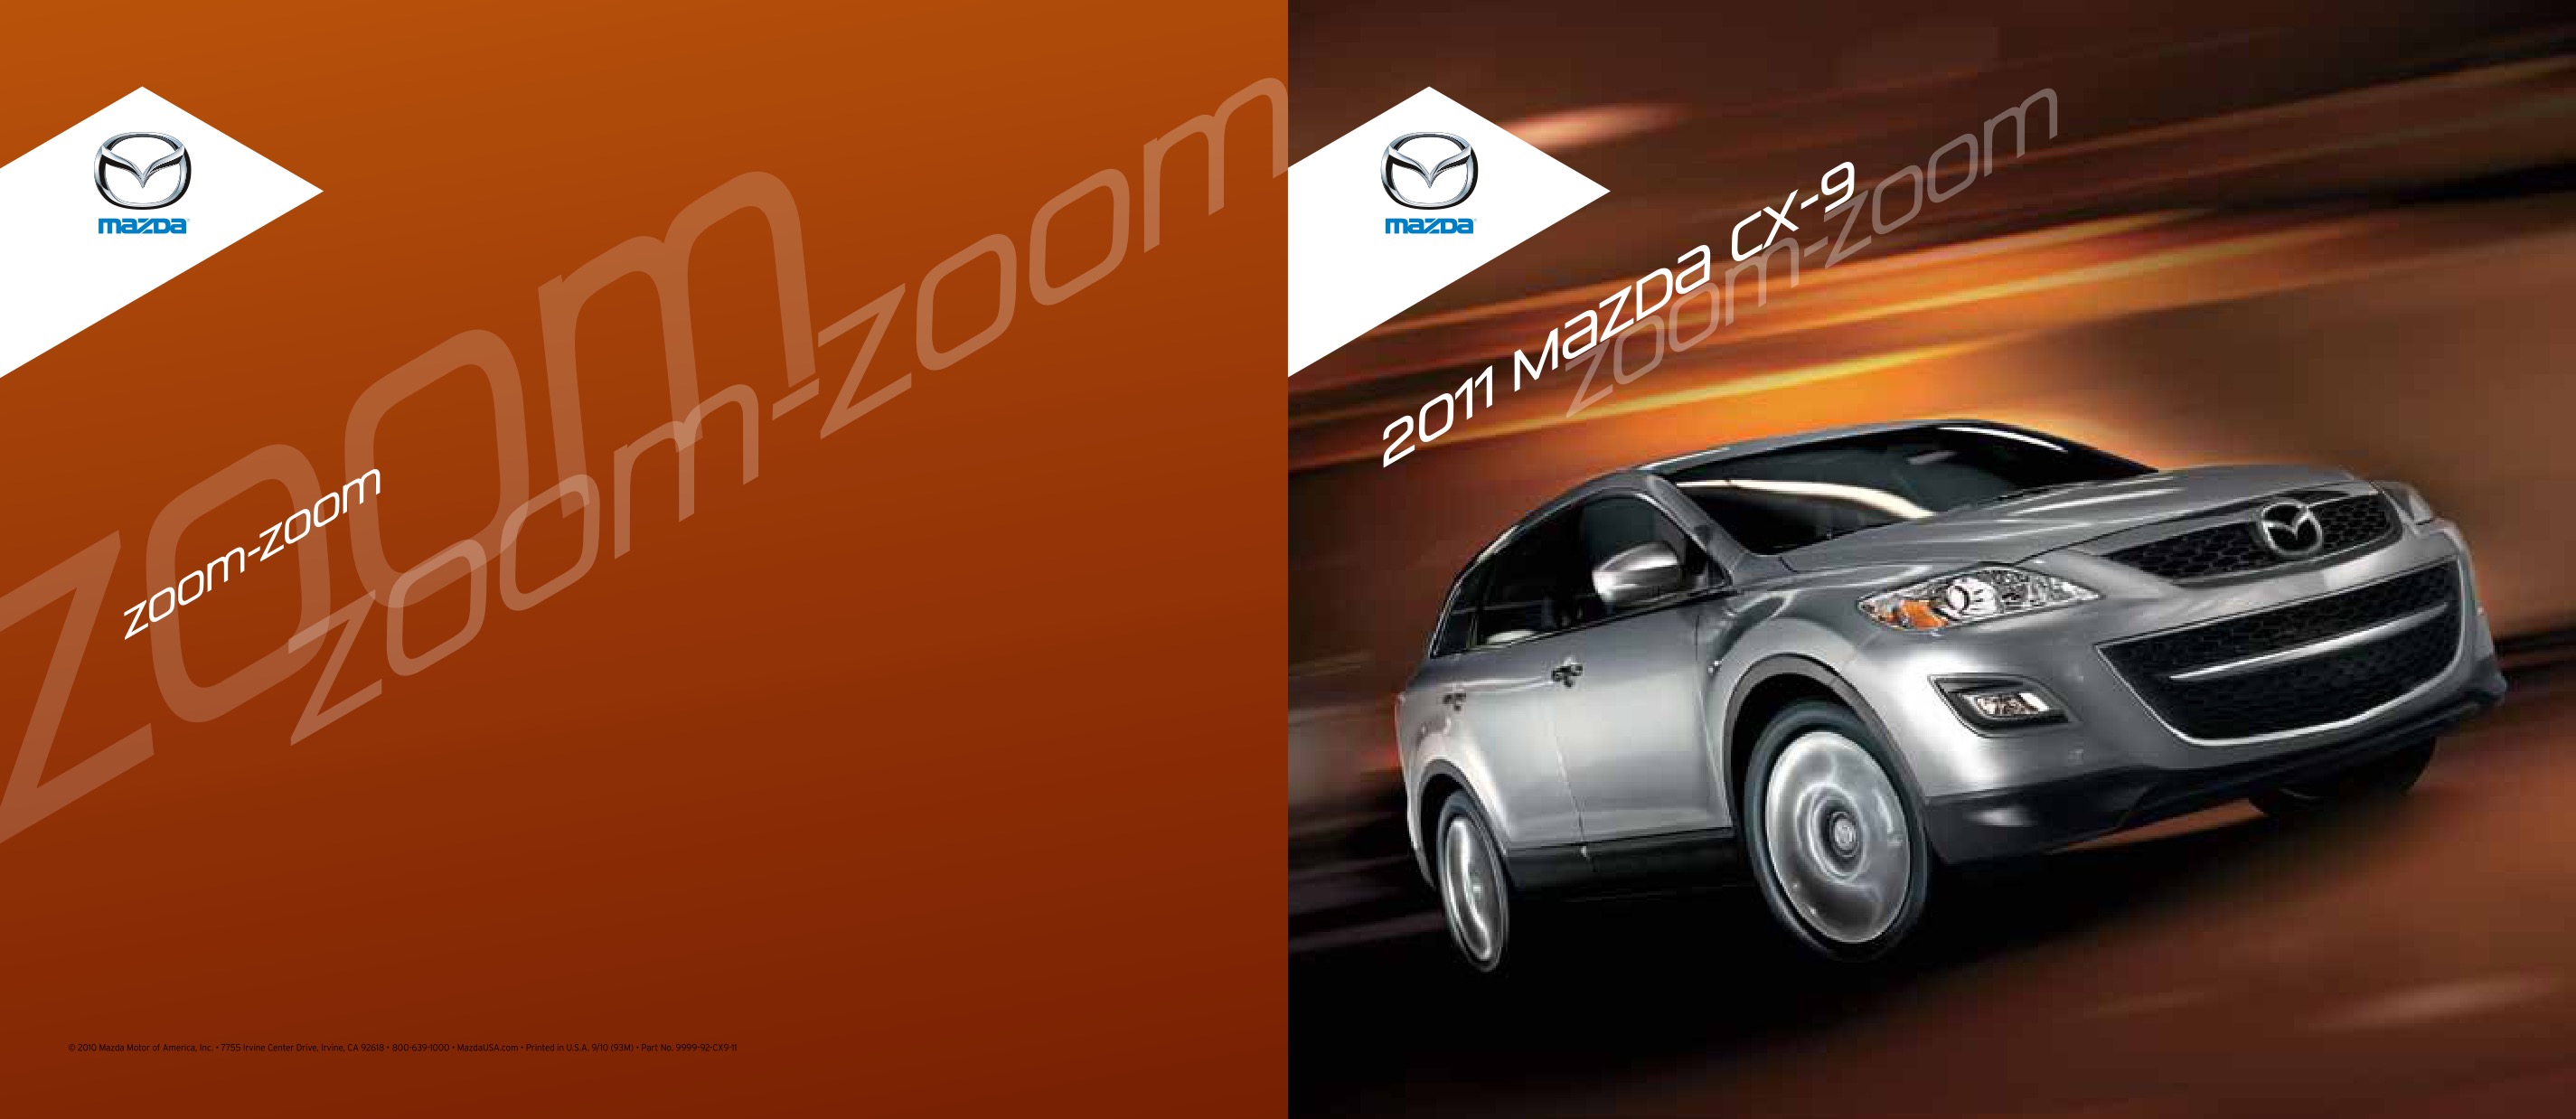 2011 Mazda CX-9 Brochure